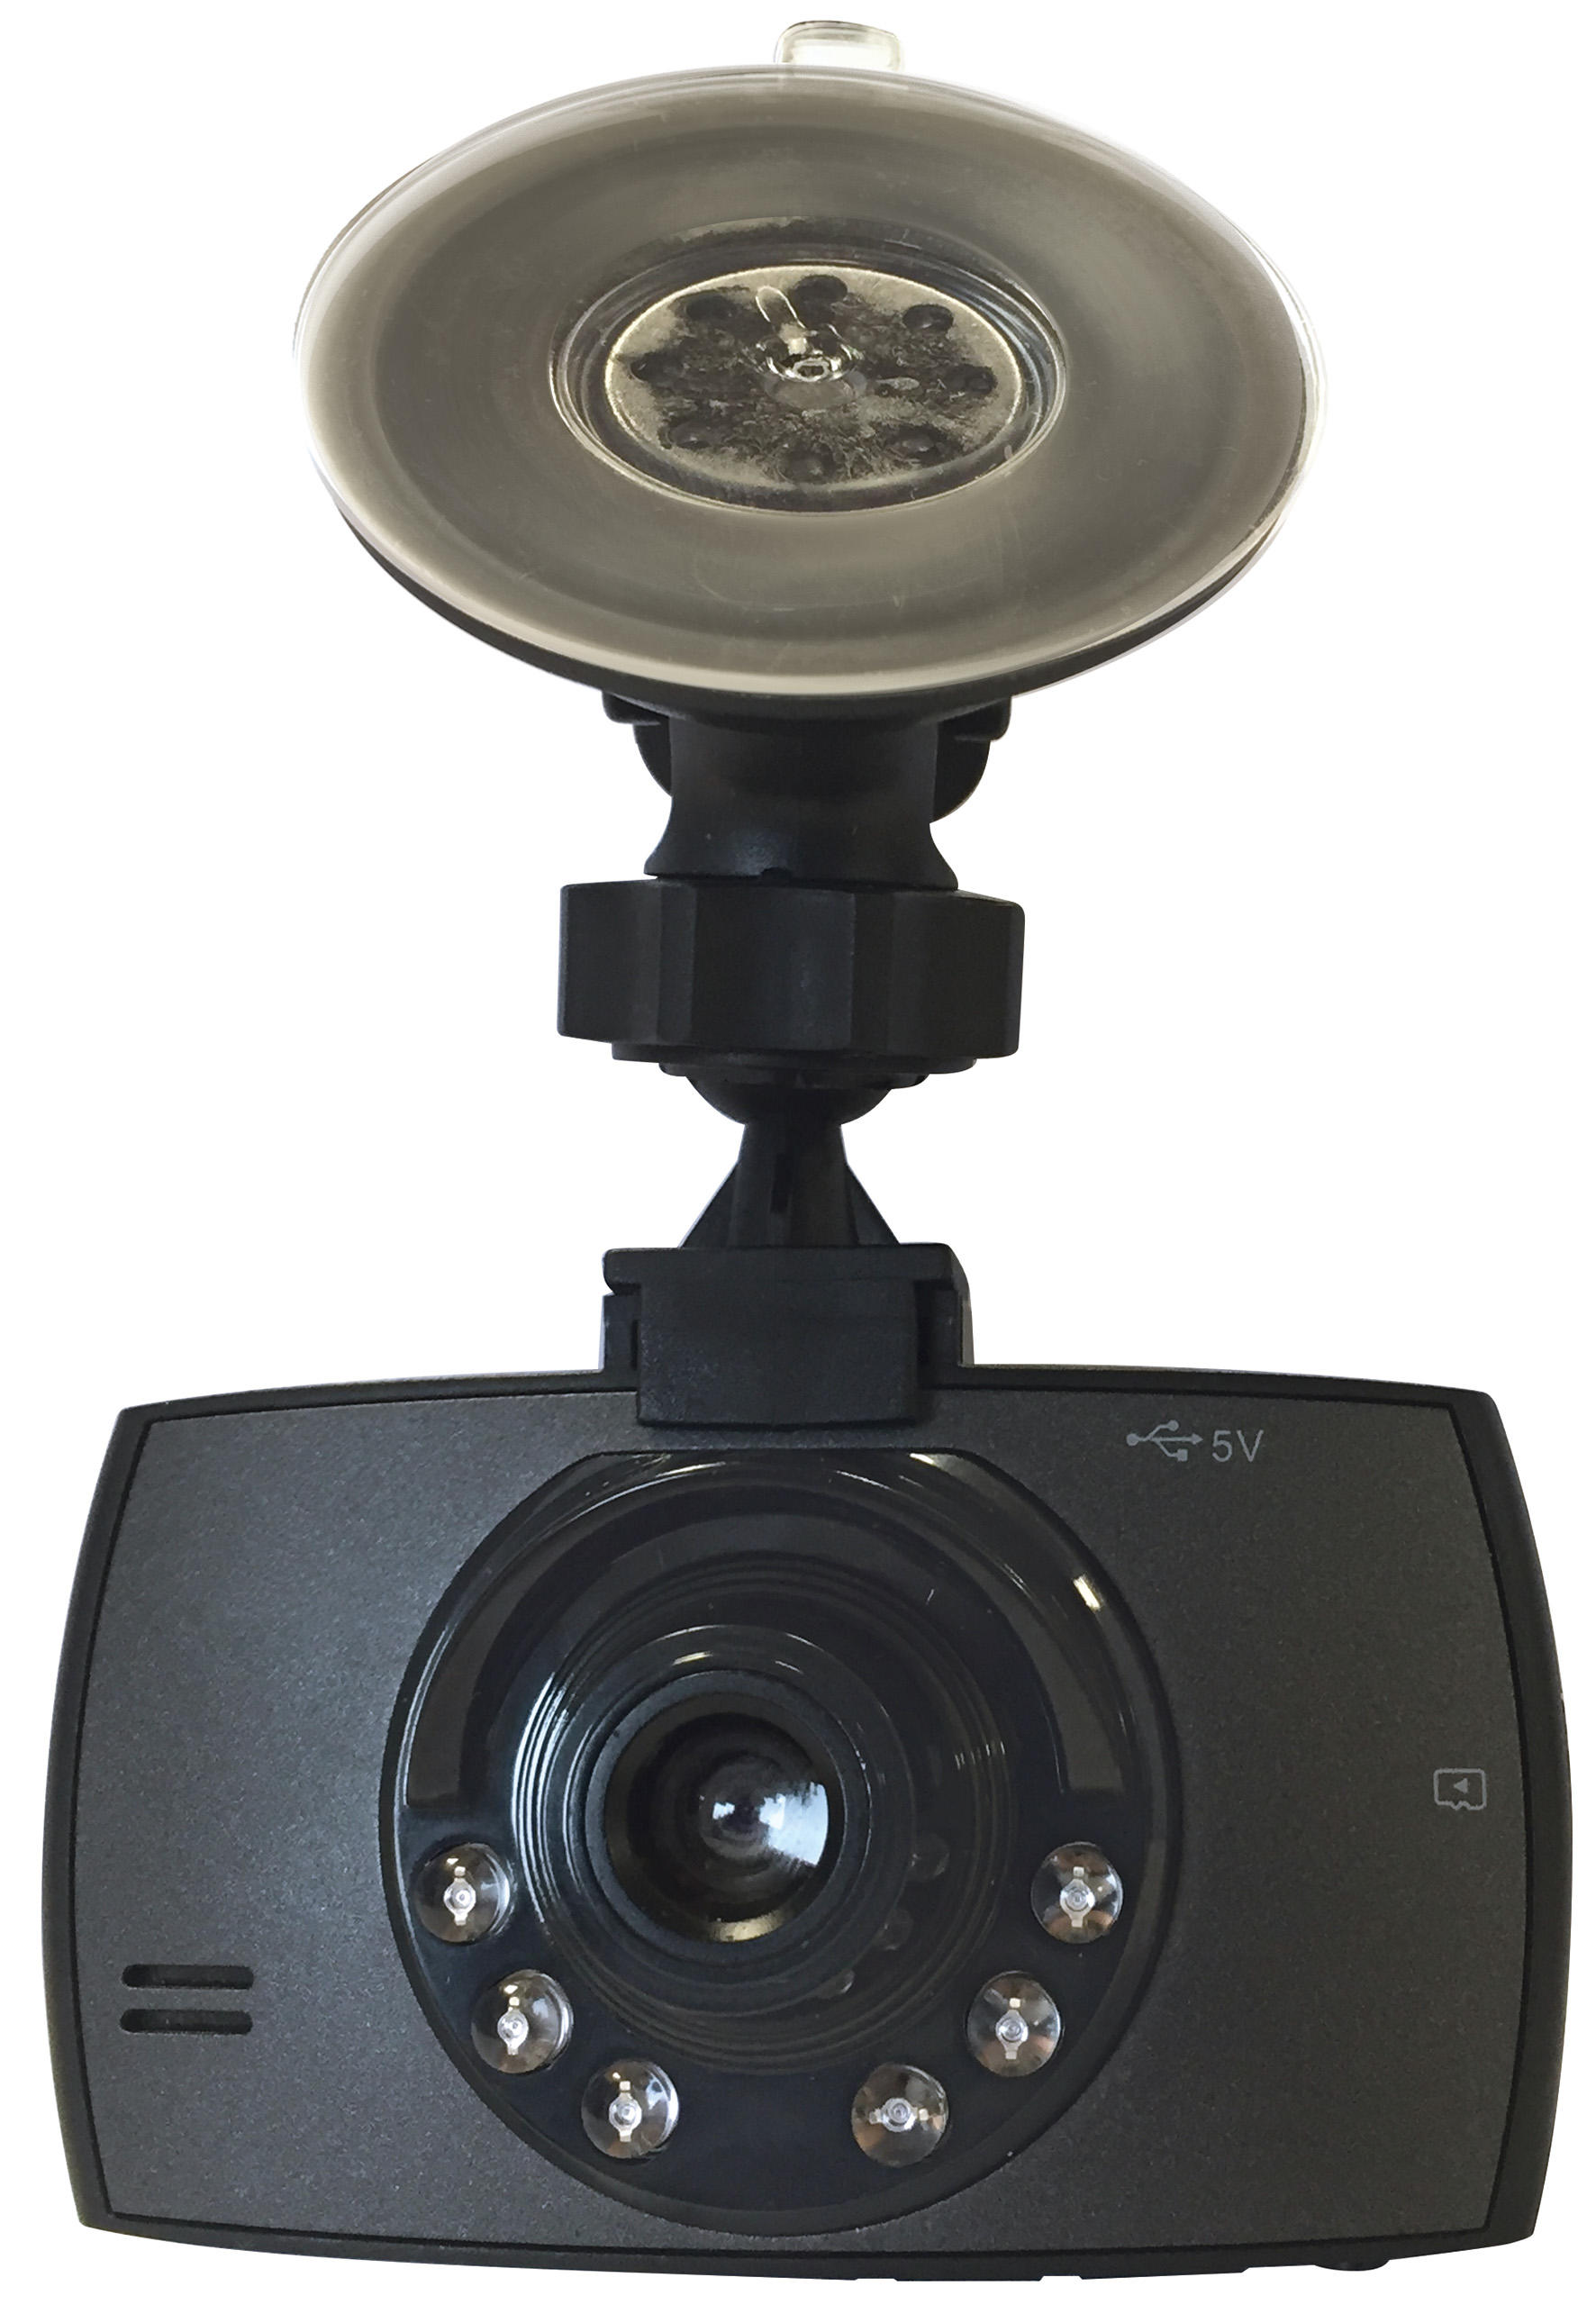 Camera video auto, Camera bord cu display, senzor soc, vedere noapte, senzor miscare, Full Hd 1080p